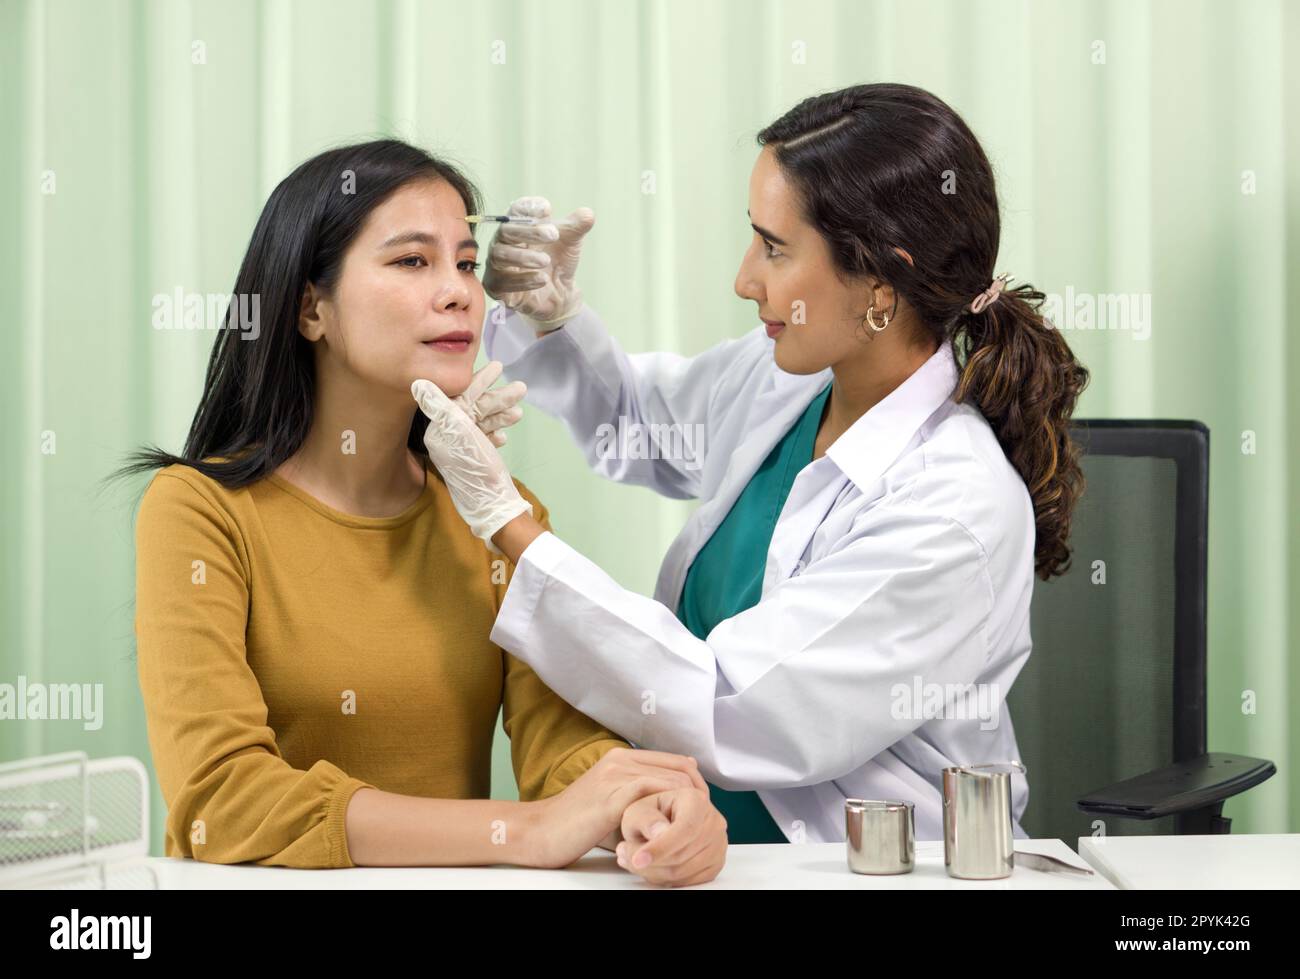 Médecin en robe blanche et gant de protection donnant à la patiente une injection médicale dans le front. Banque D'Images